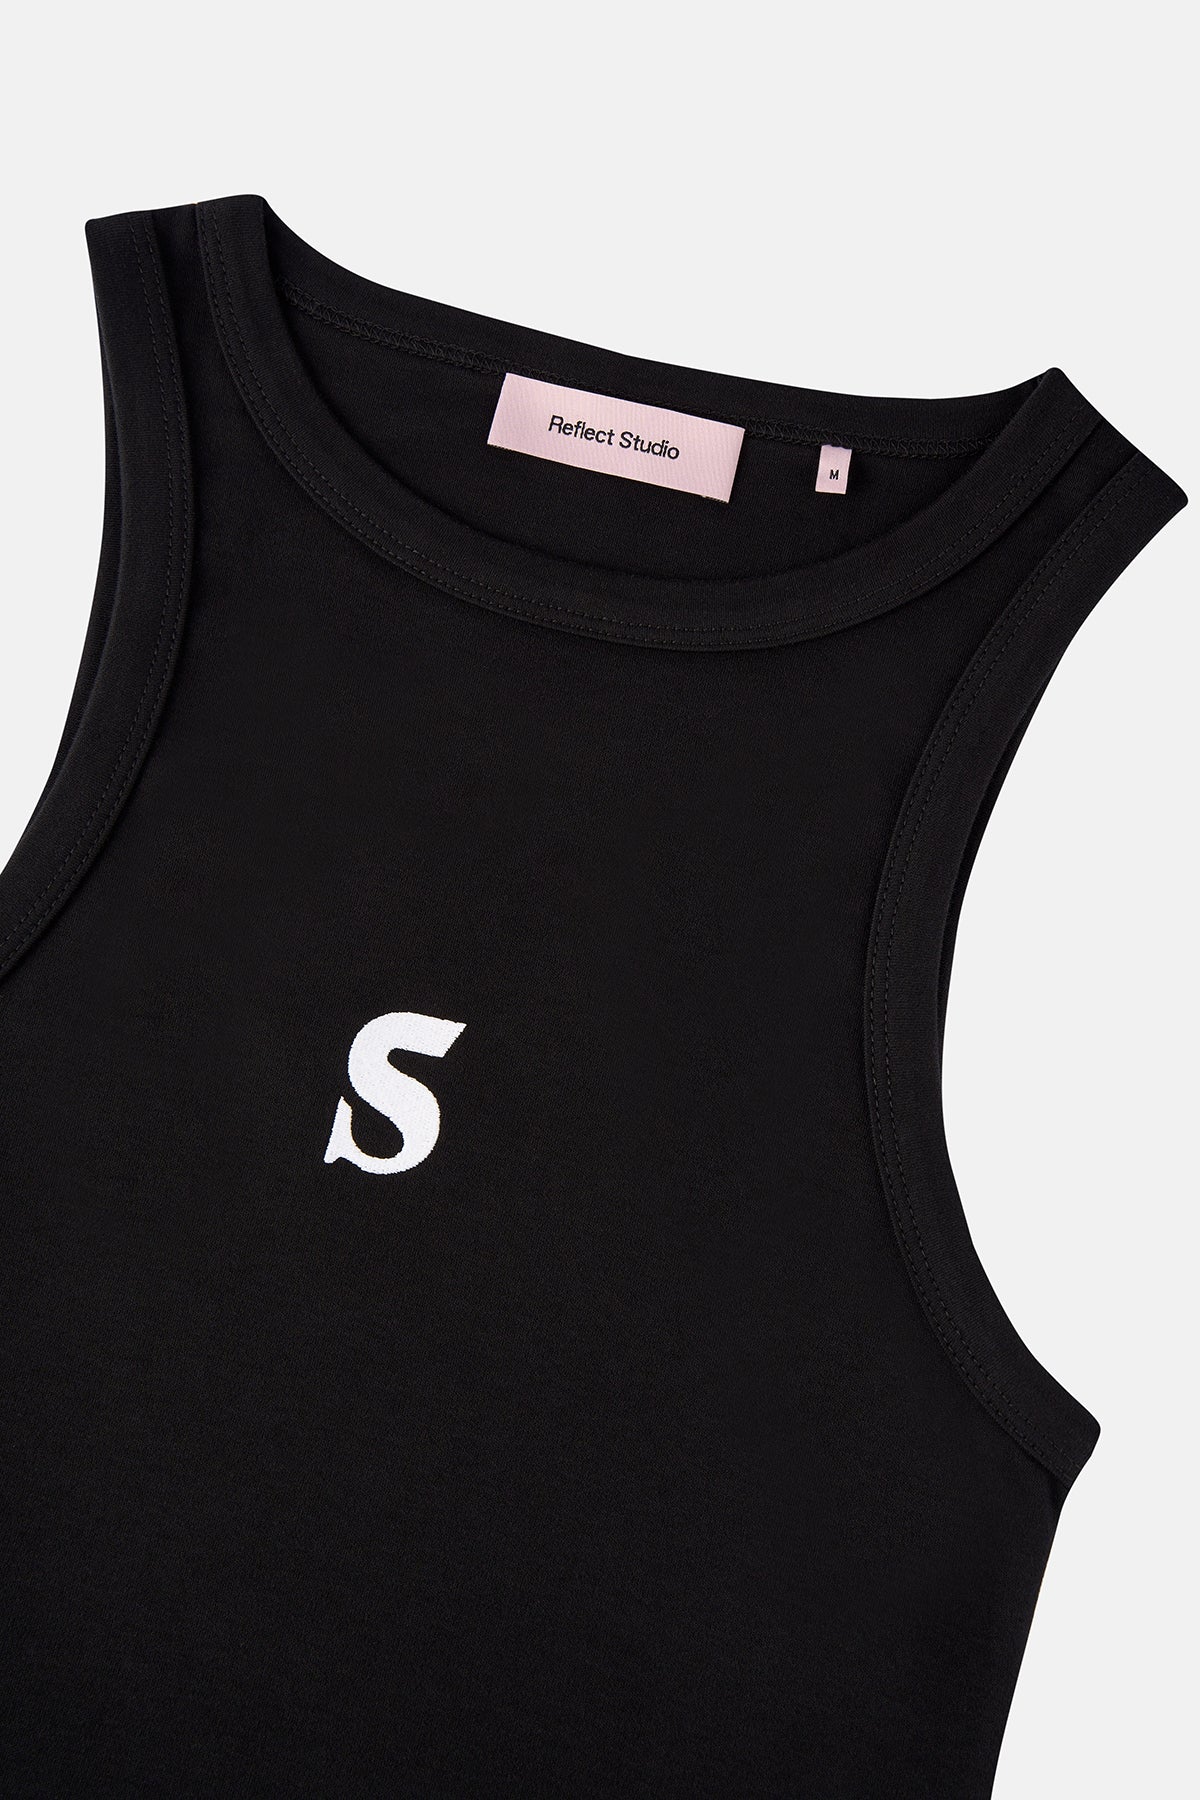 Socrates Logo Premium Elbise - Siyah